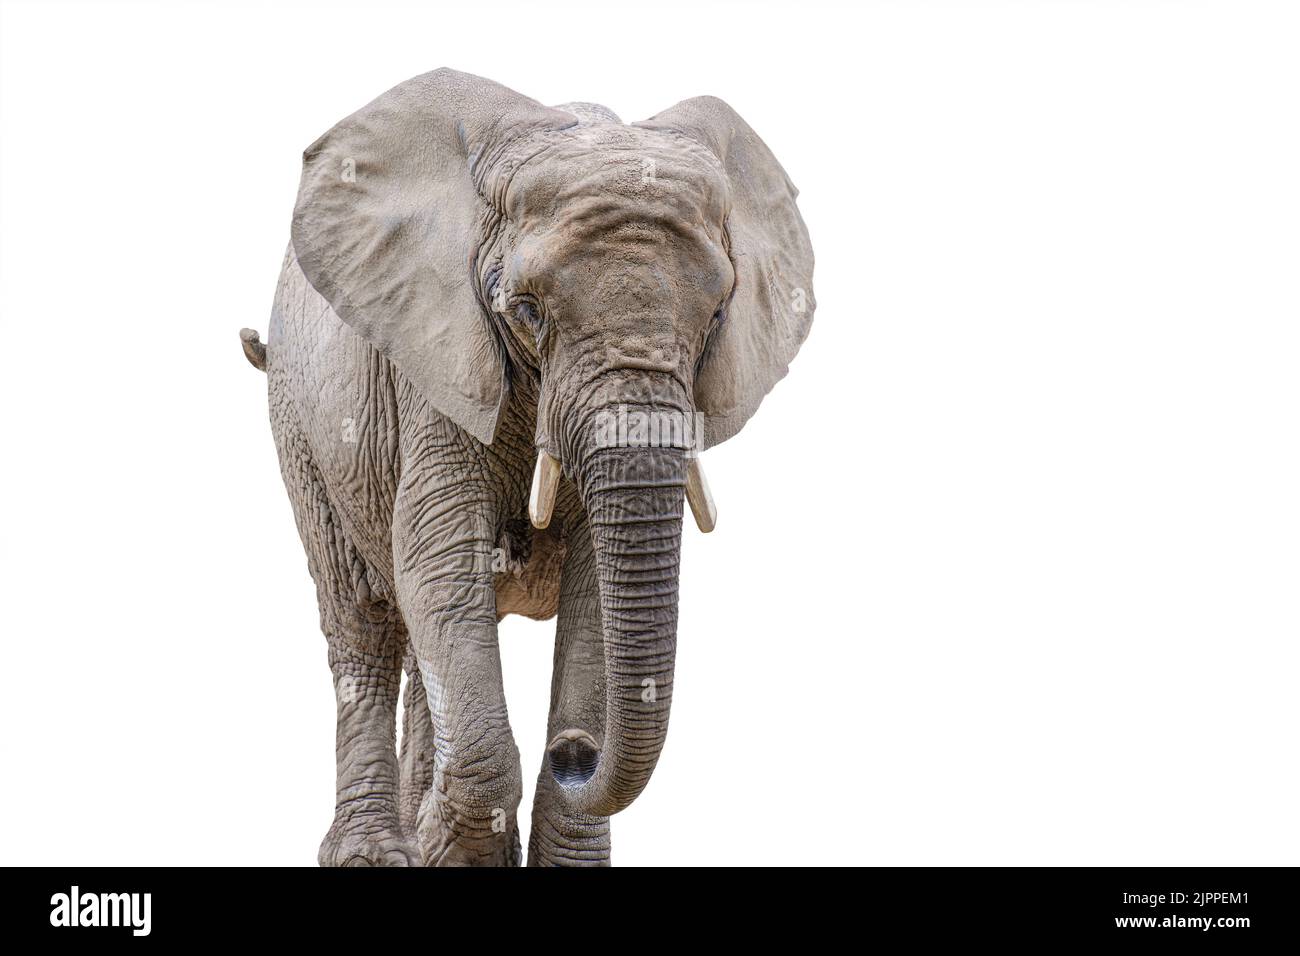 Elefante a piedi isolato su bianco. Elefante africano isolato su sfondo bianco uniforme. Foto di un elefante in primo piano, vista laterale. Foto Stock